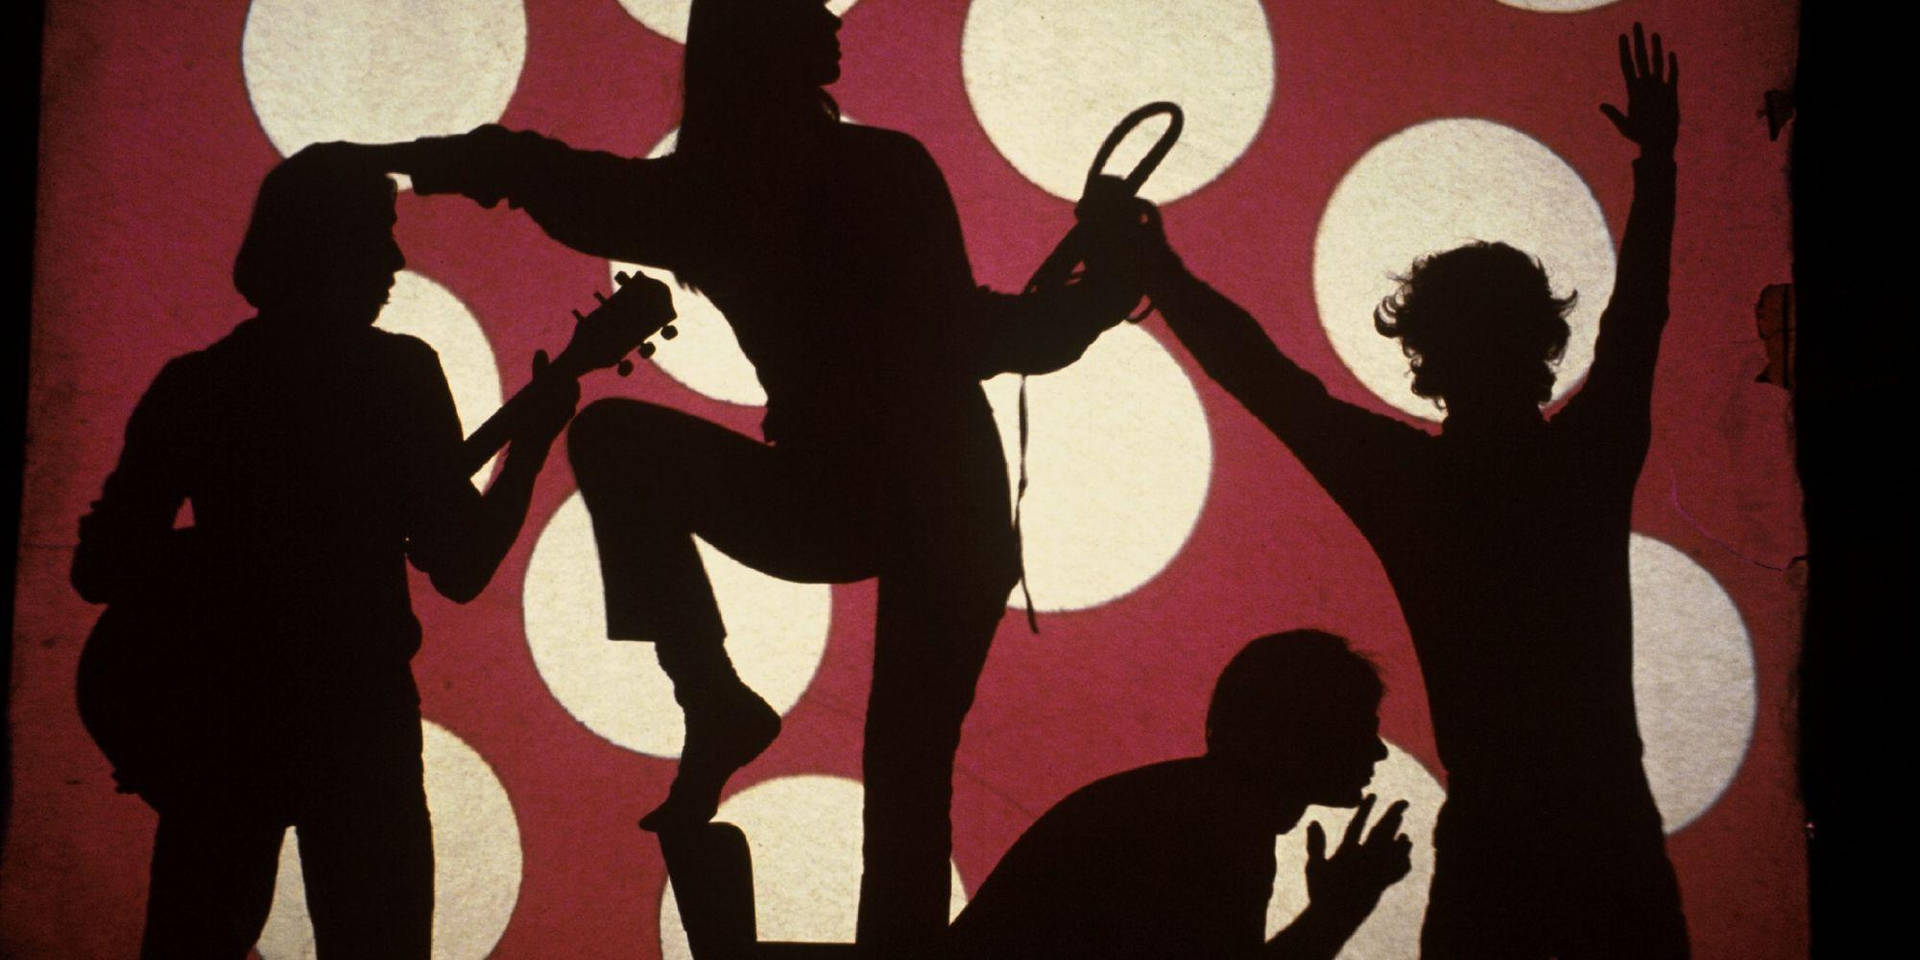 The Velvet Underground 1966 Silhouette Illustration Wallpaper